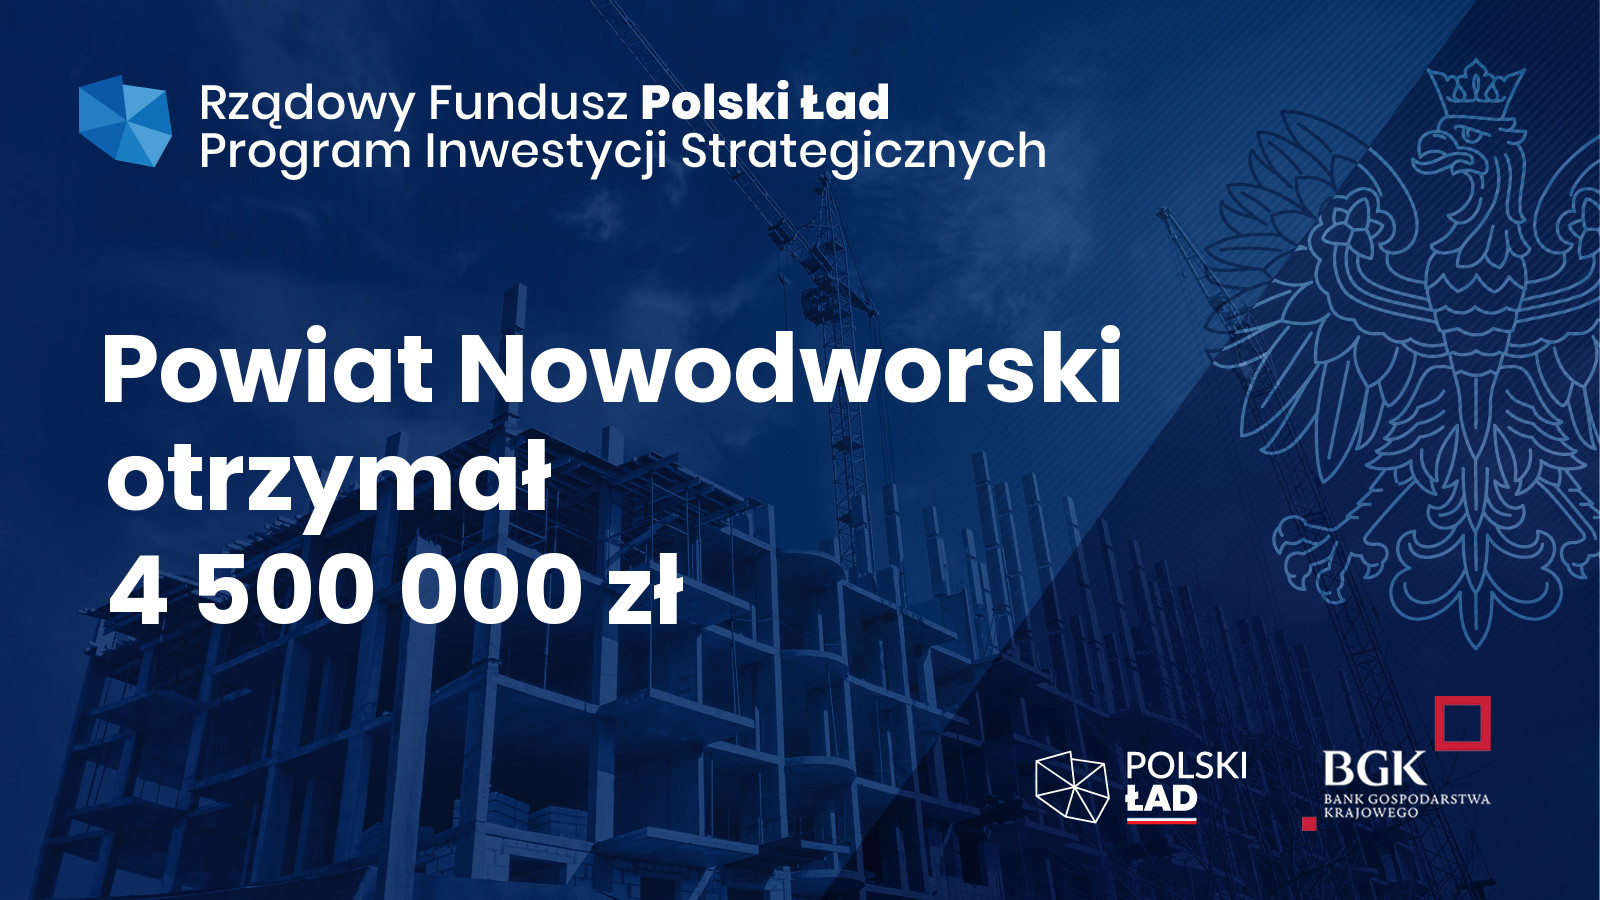 Dofinansowanie z Polskiego Ładu - powiat nowodworski, fot. 6/6